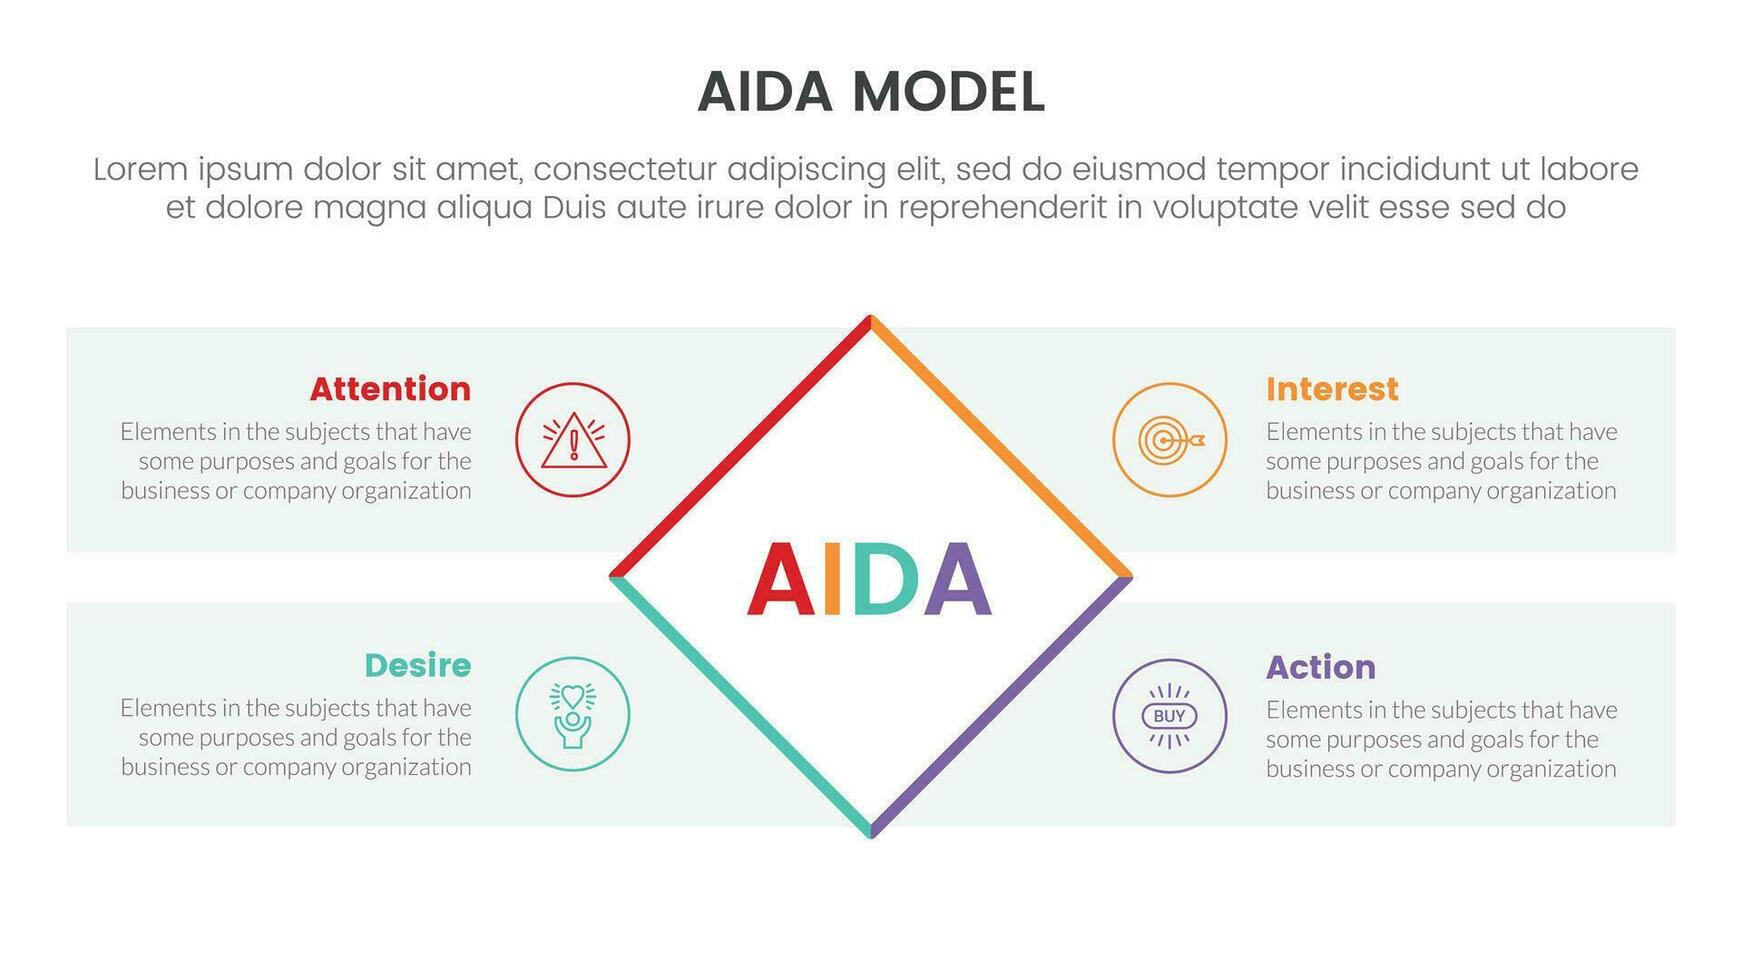 Aida Modell- zum Beachtung Interesse Verlangen Aktion Infografik Konzept mit gedreht Rechteck Center 4 Punkte zum rutschen Präsentation Stil Vektor